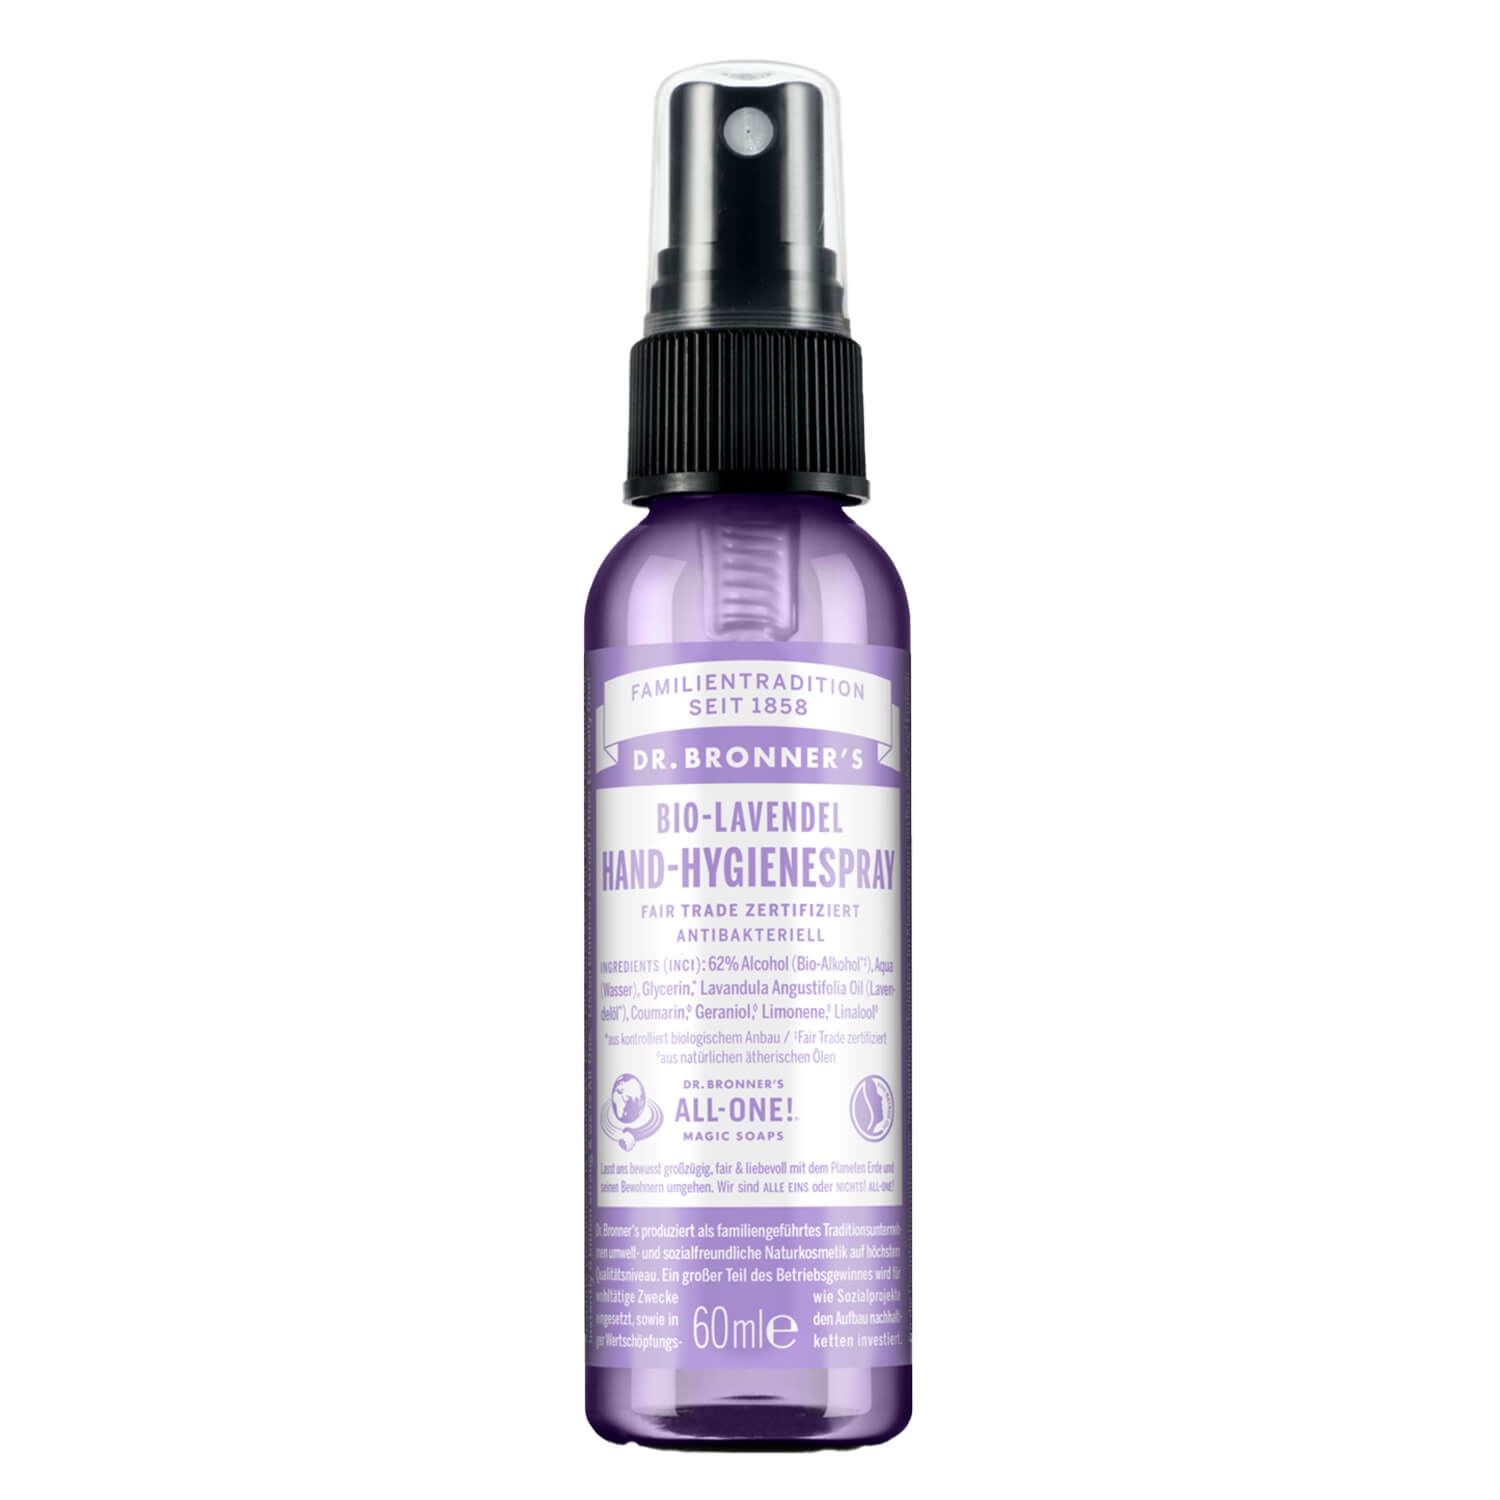 Produktbild von DR. BRONNER'S - Hygienespray Lavendel